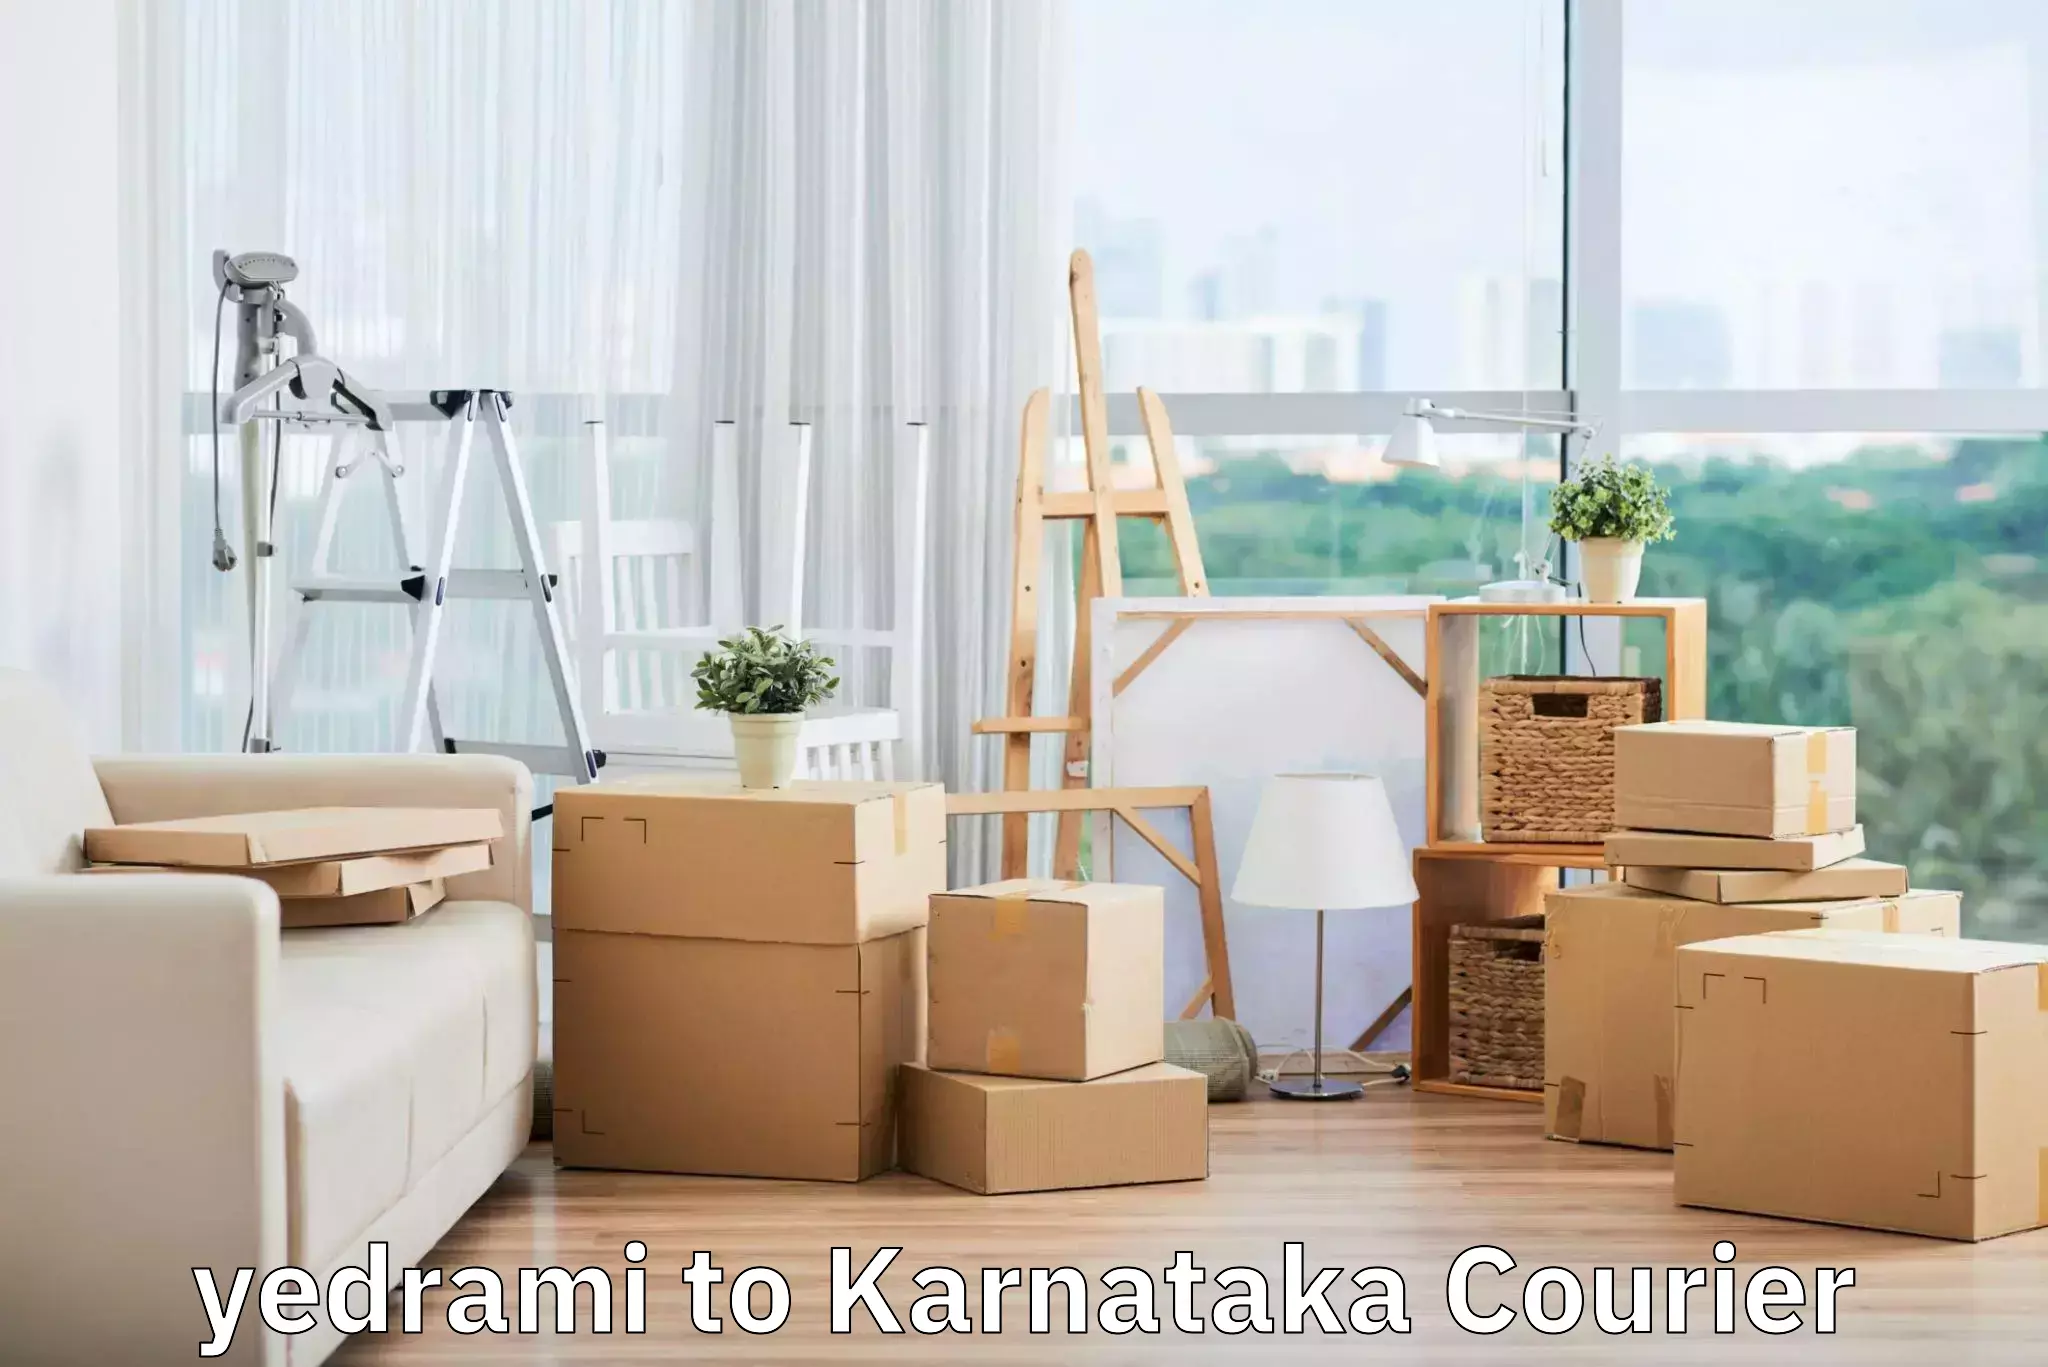 Affordable luggage shipping in yedrami to Karnataka